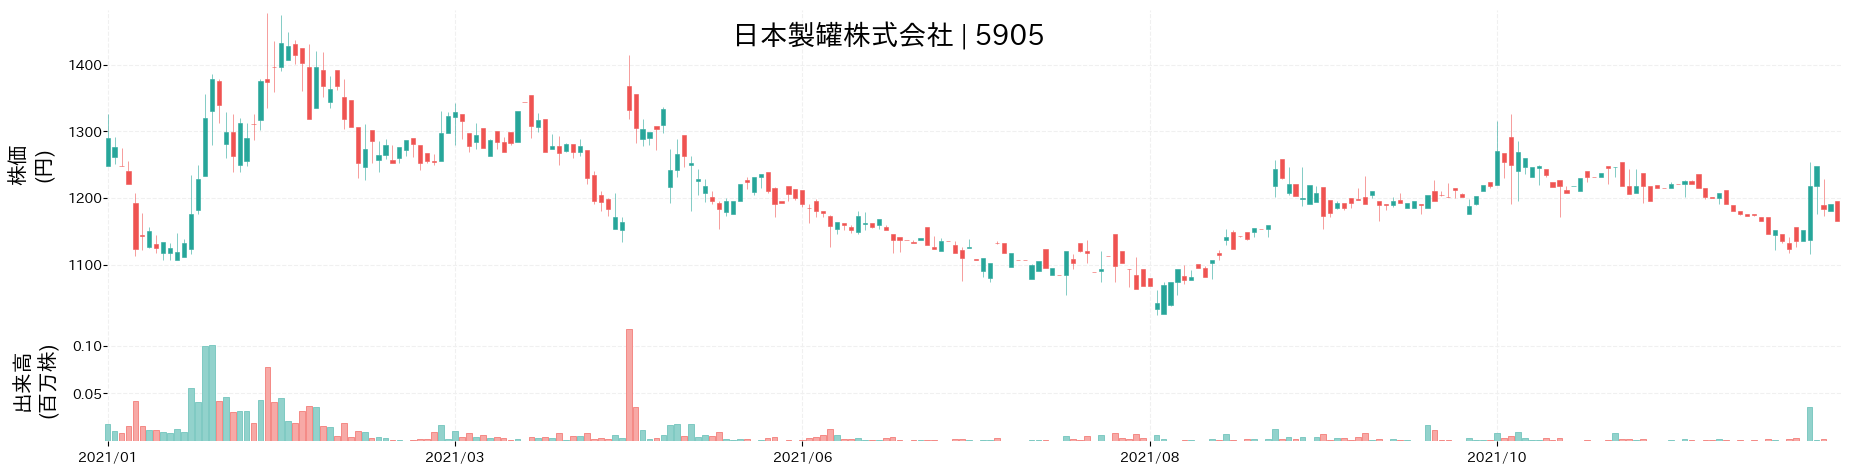 日本製罐の株価推移(2021)